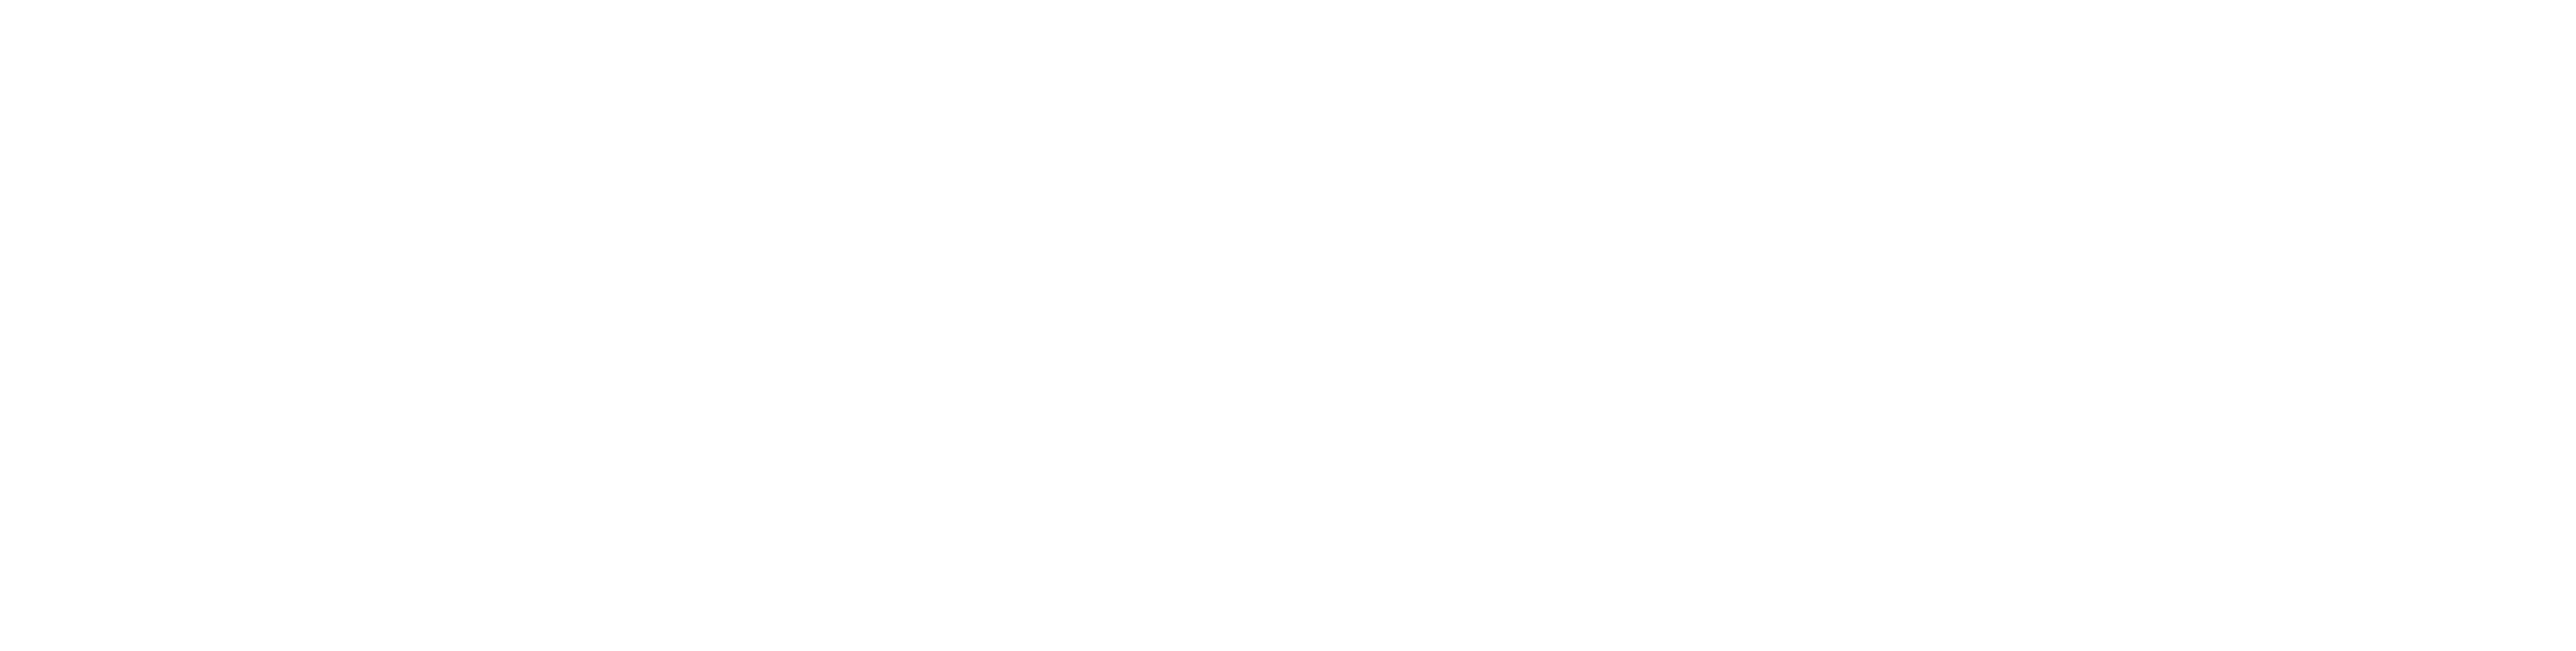 WOC Print